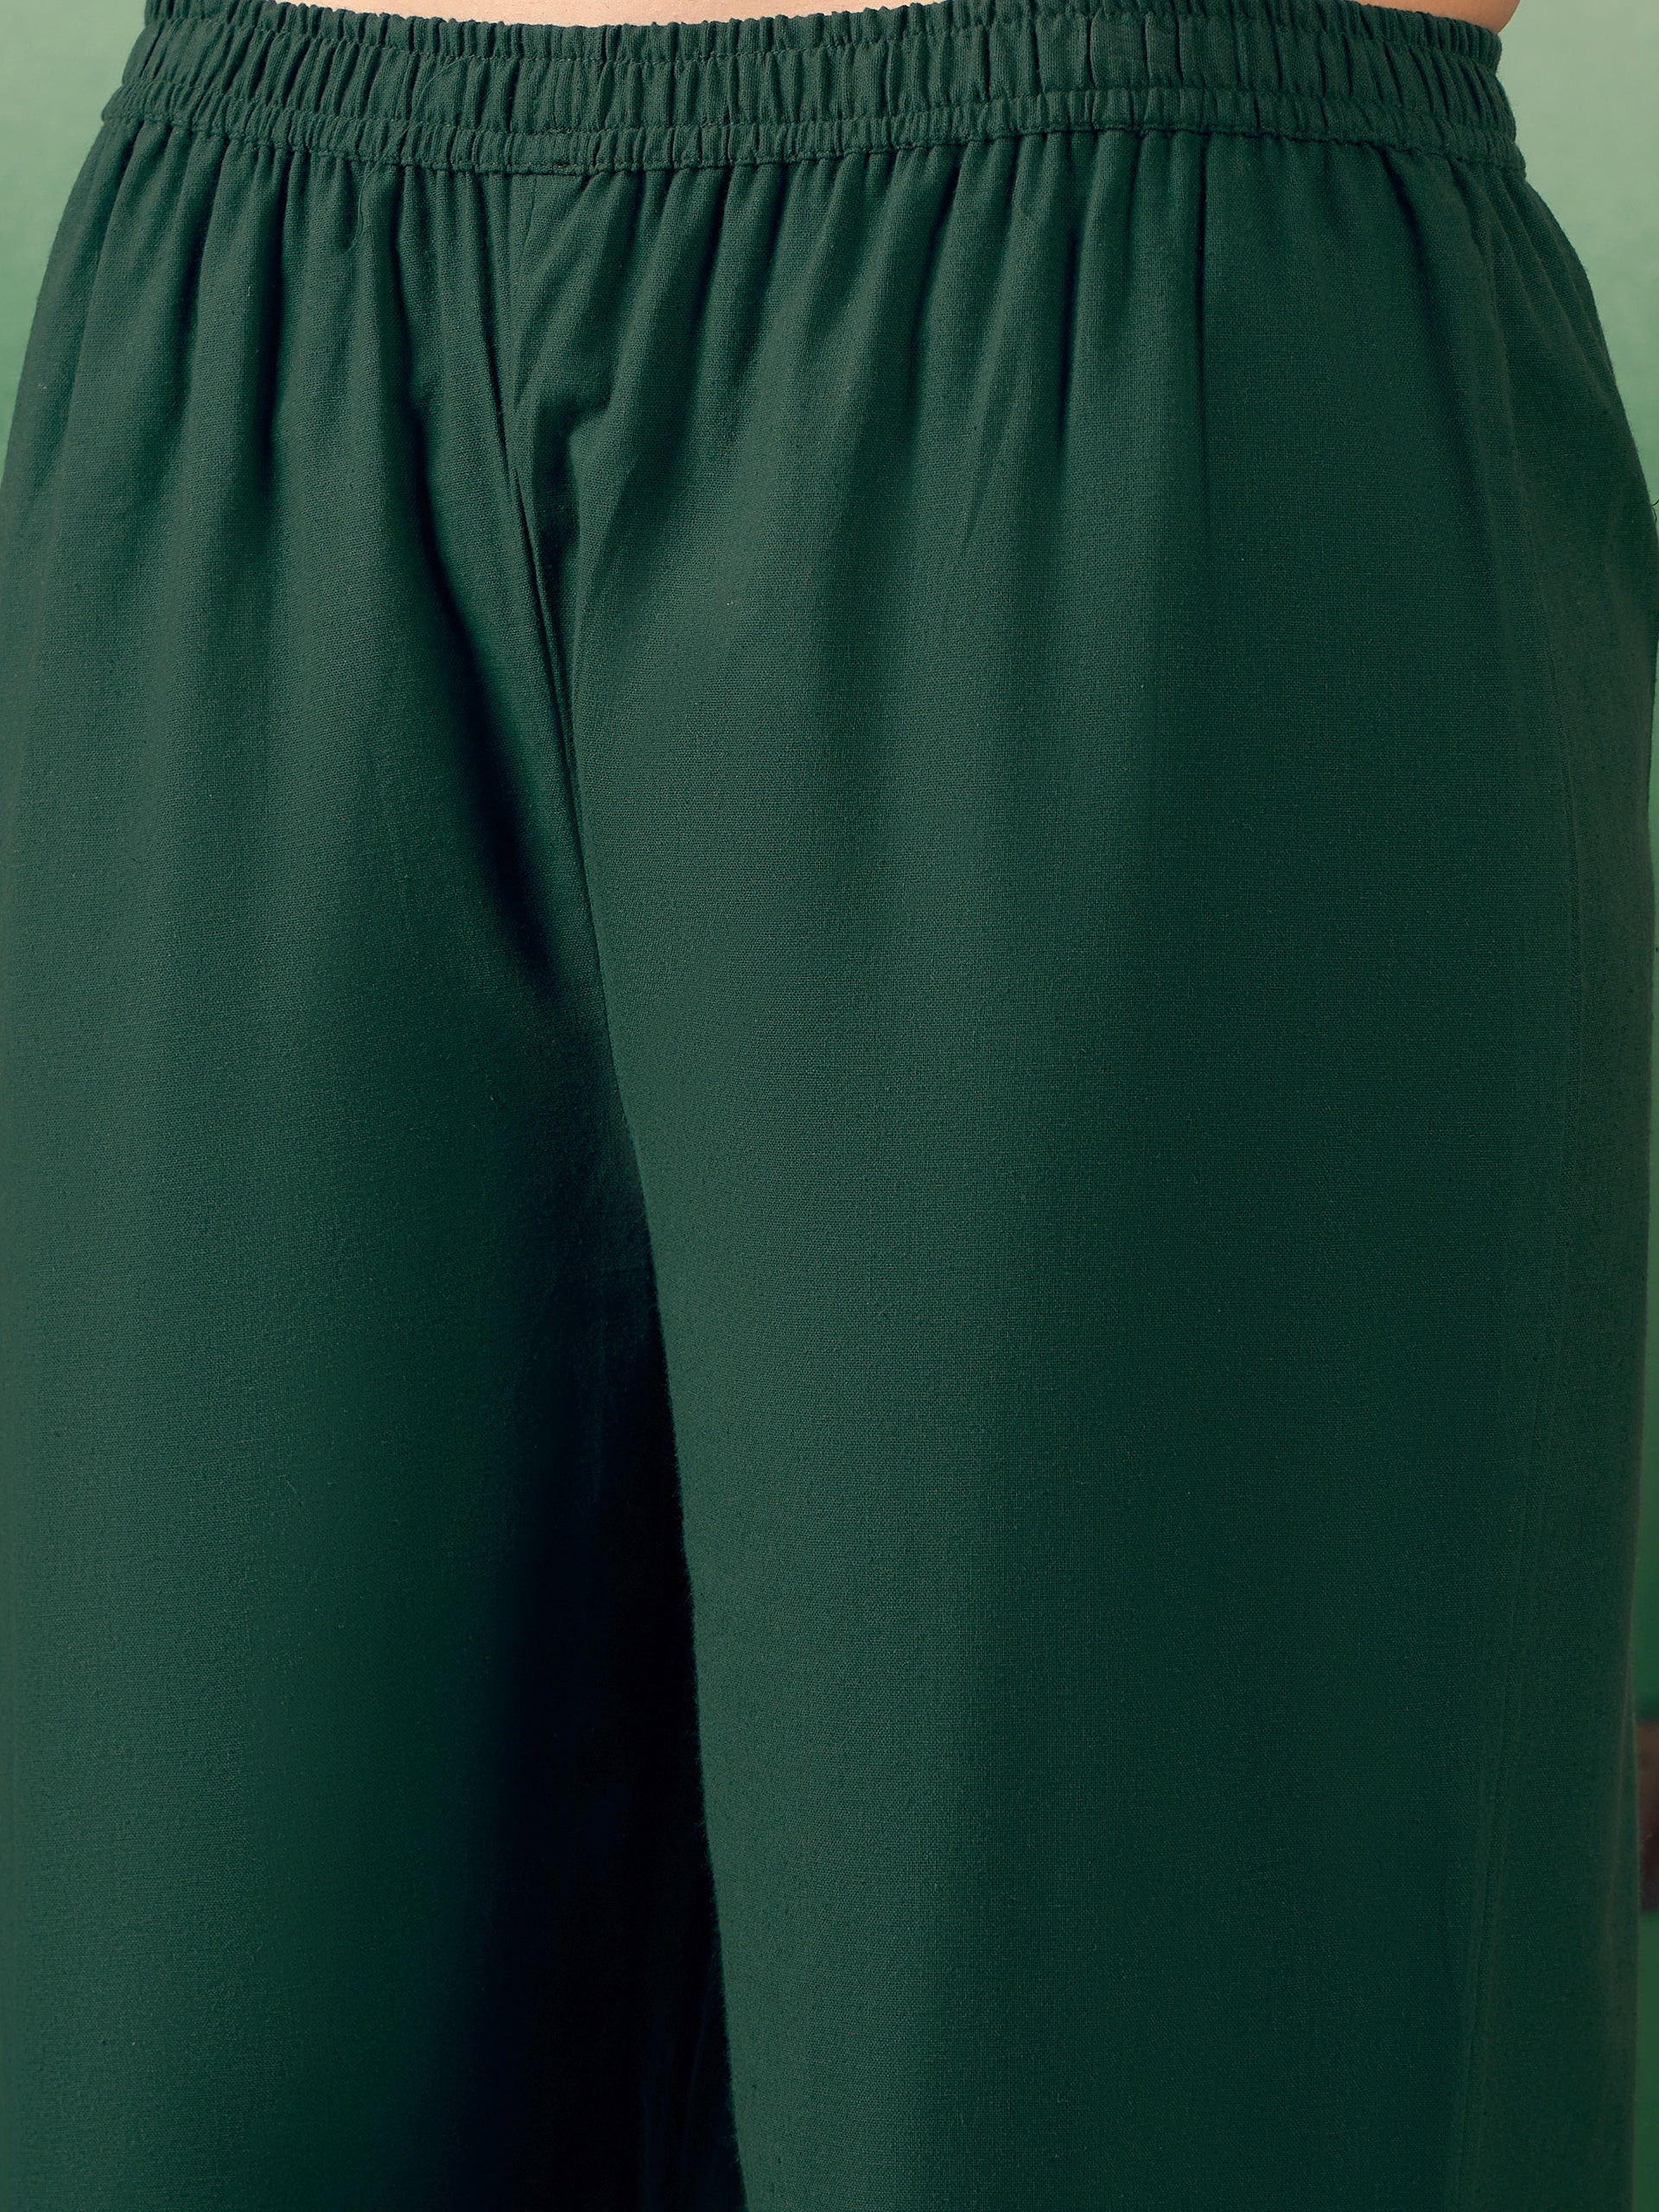 Dark Green Solid V Neck Short Kurta Pant Set